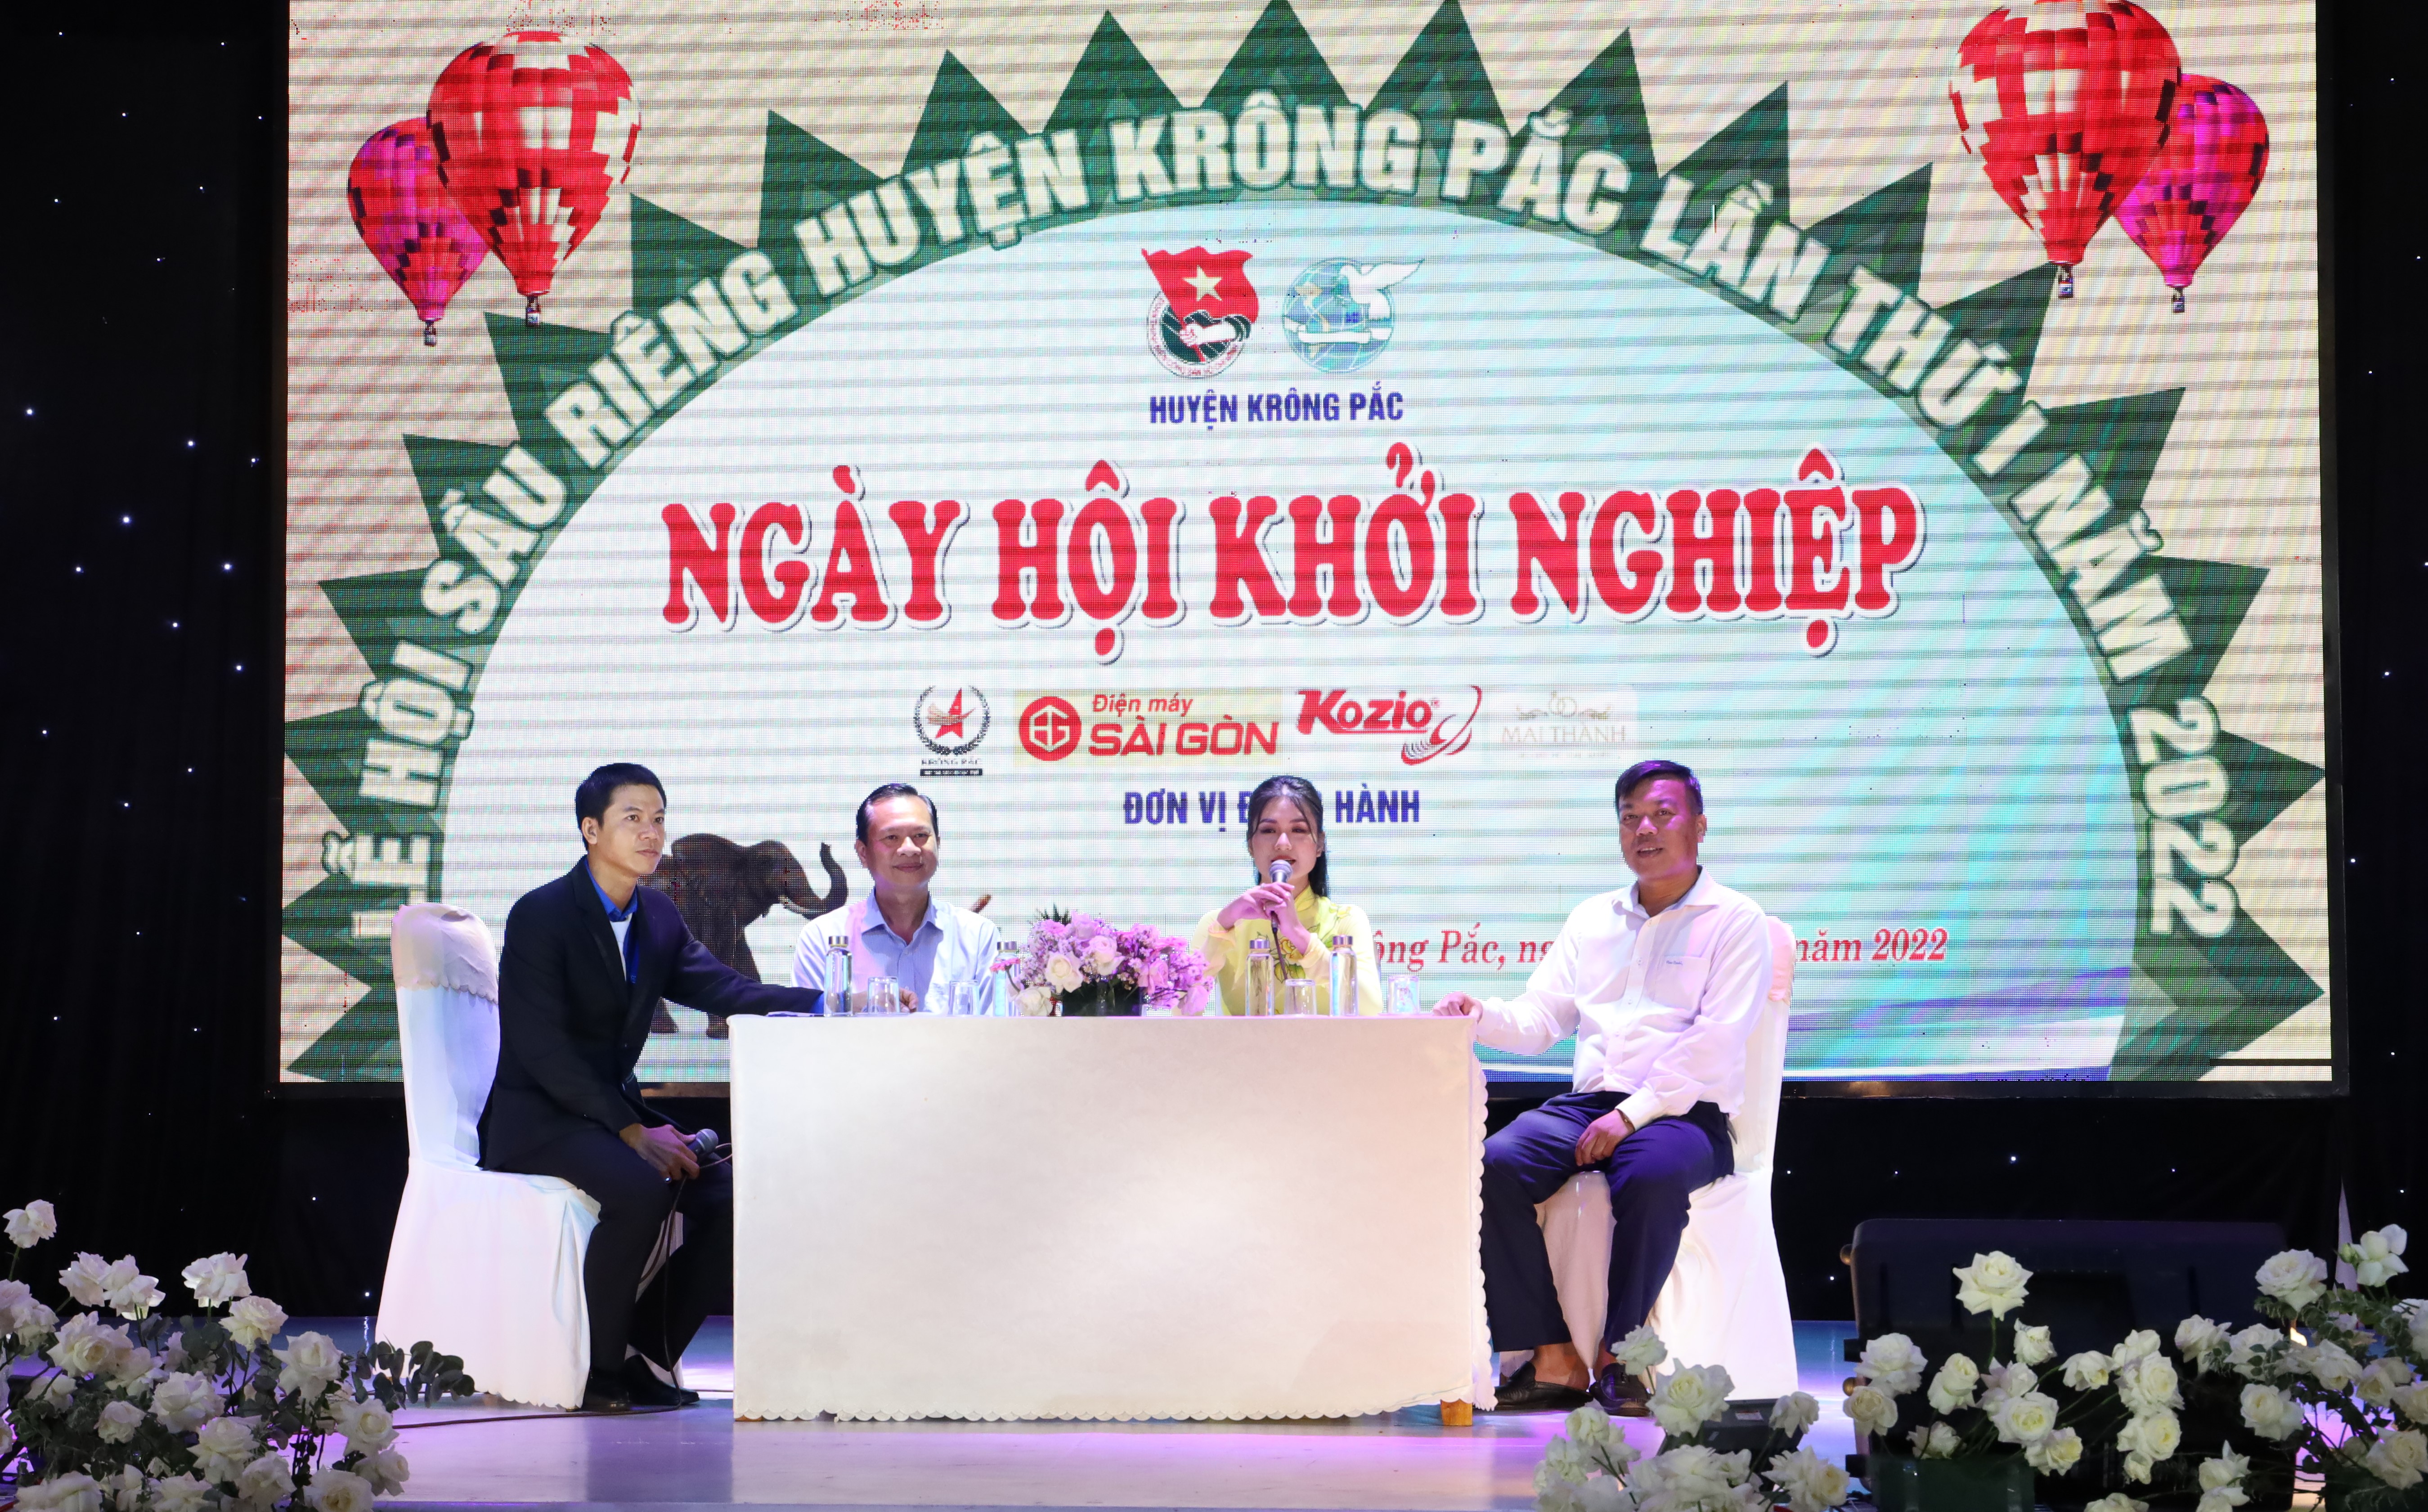 Ngày hội khởi nghiệp huyện Krông Pắc năm 2022